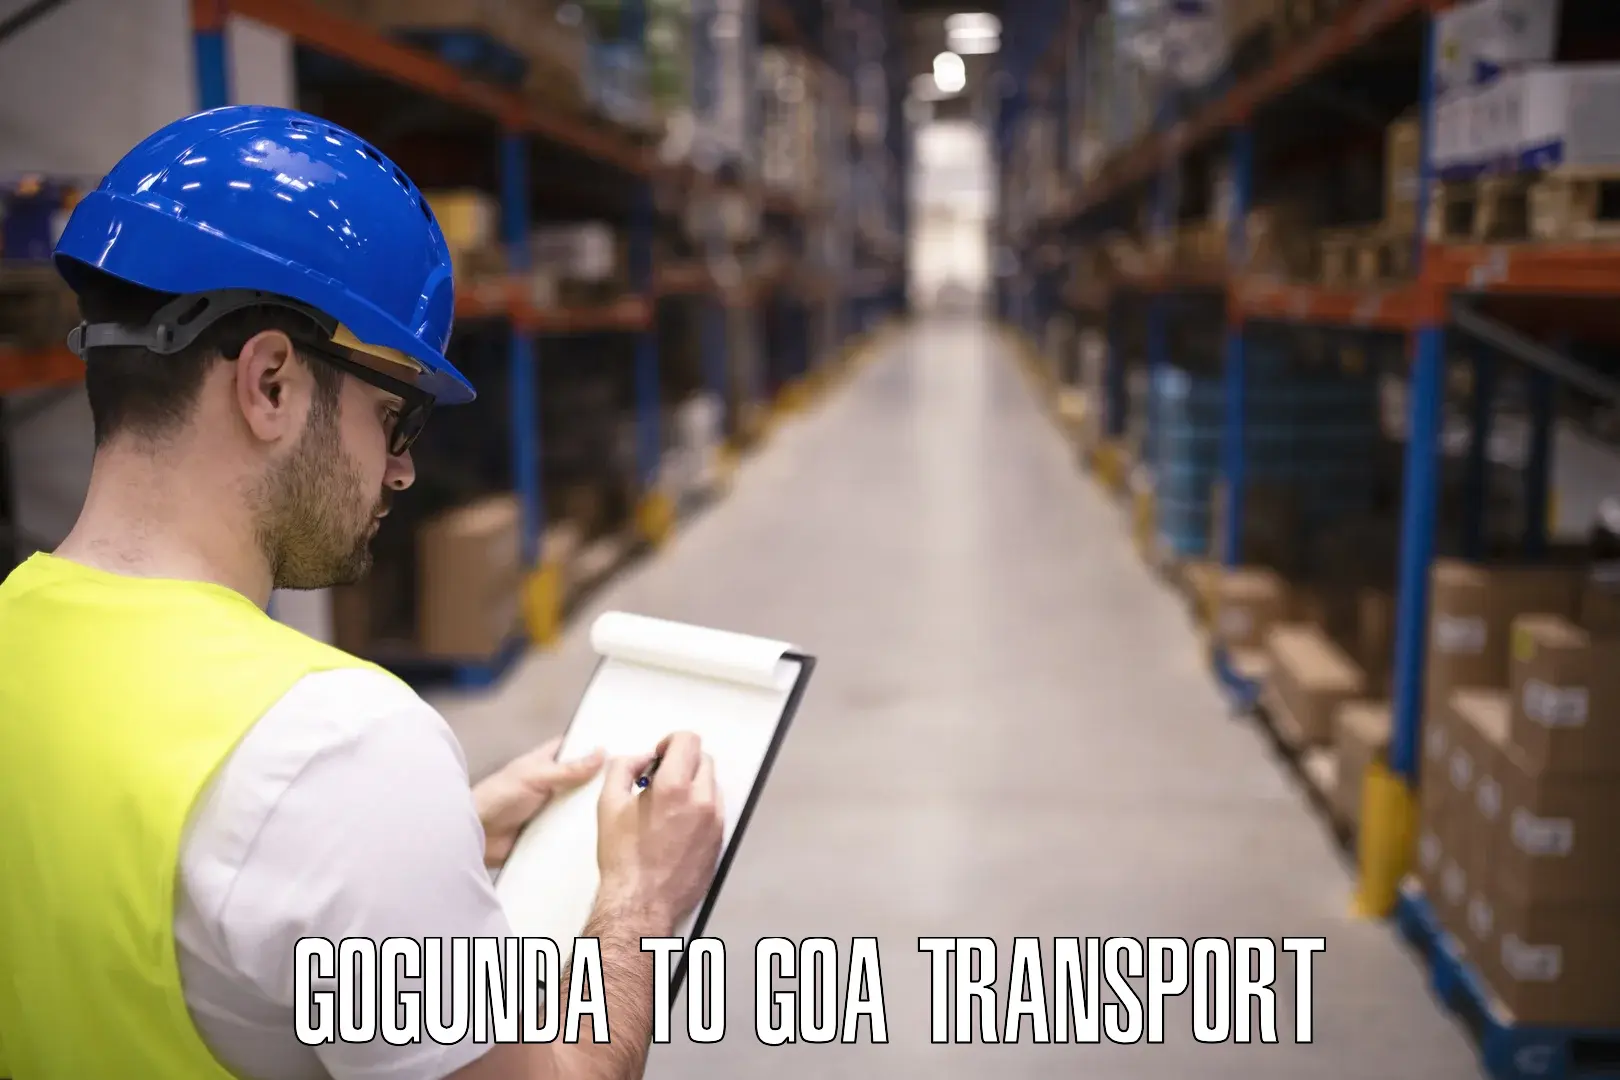 Transport shared services Gogunda to Mormugao Port